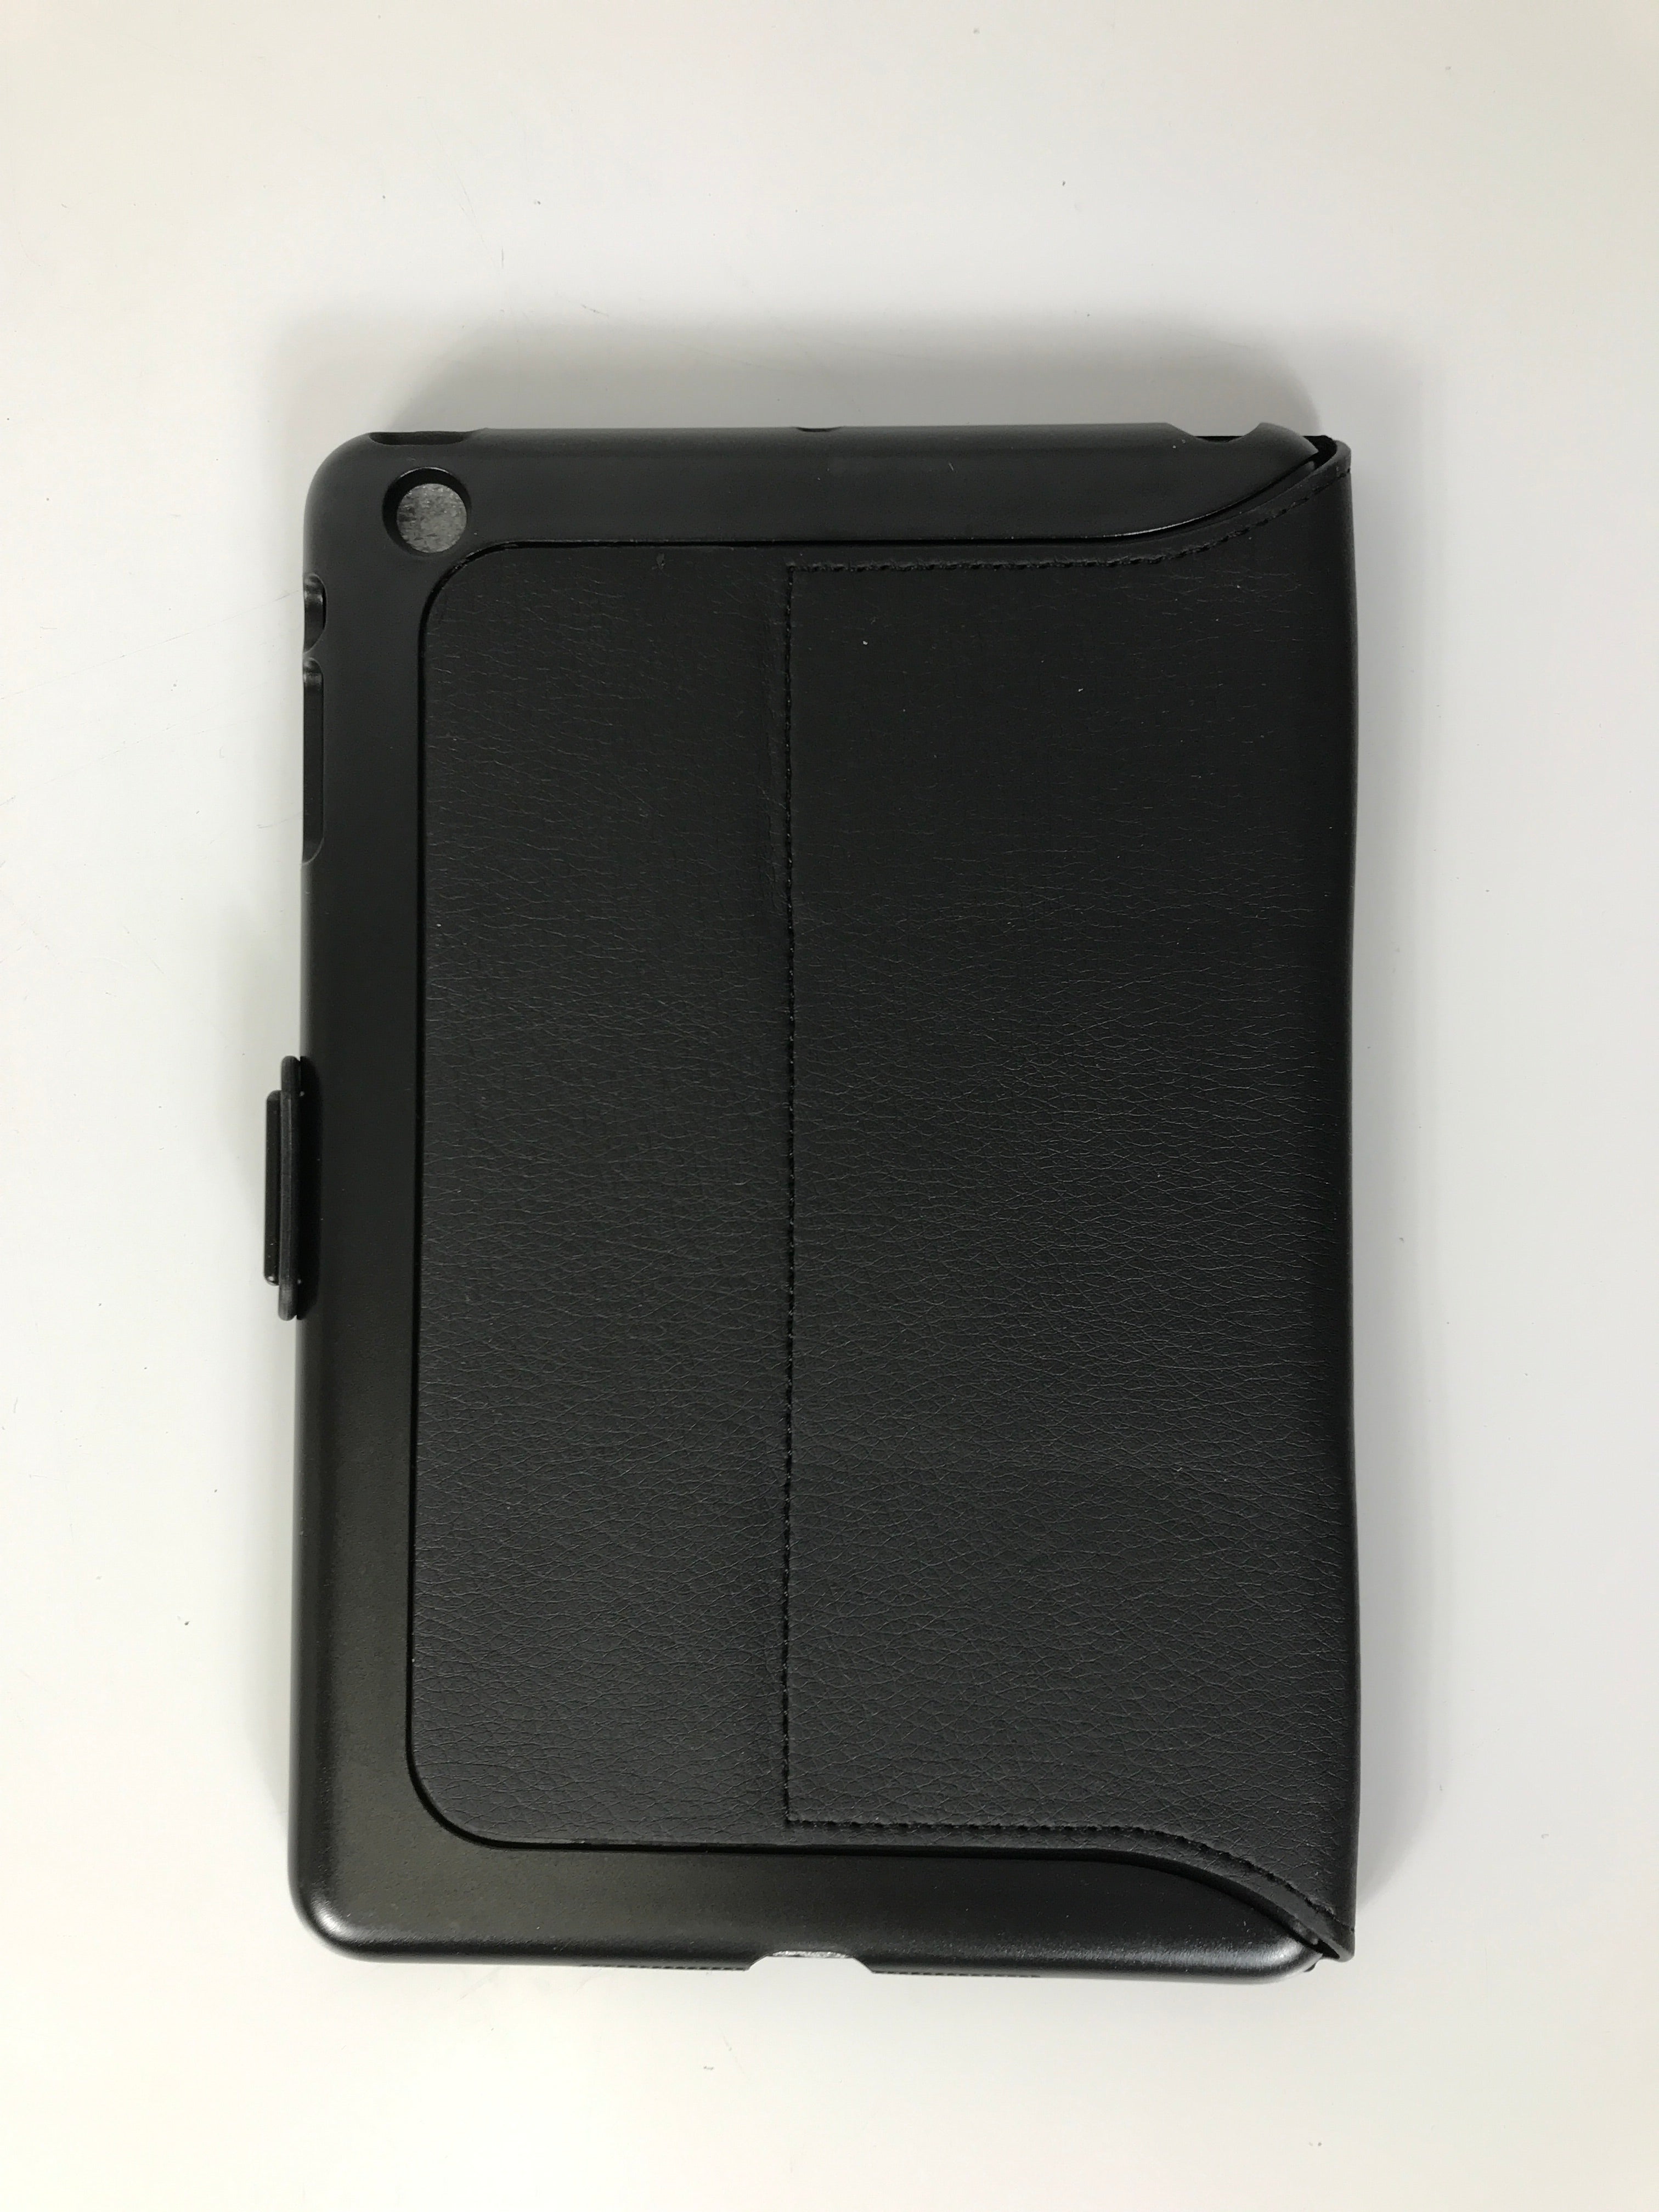 Speck Fit Folio Case for iPad Mini *New*